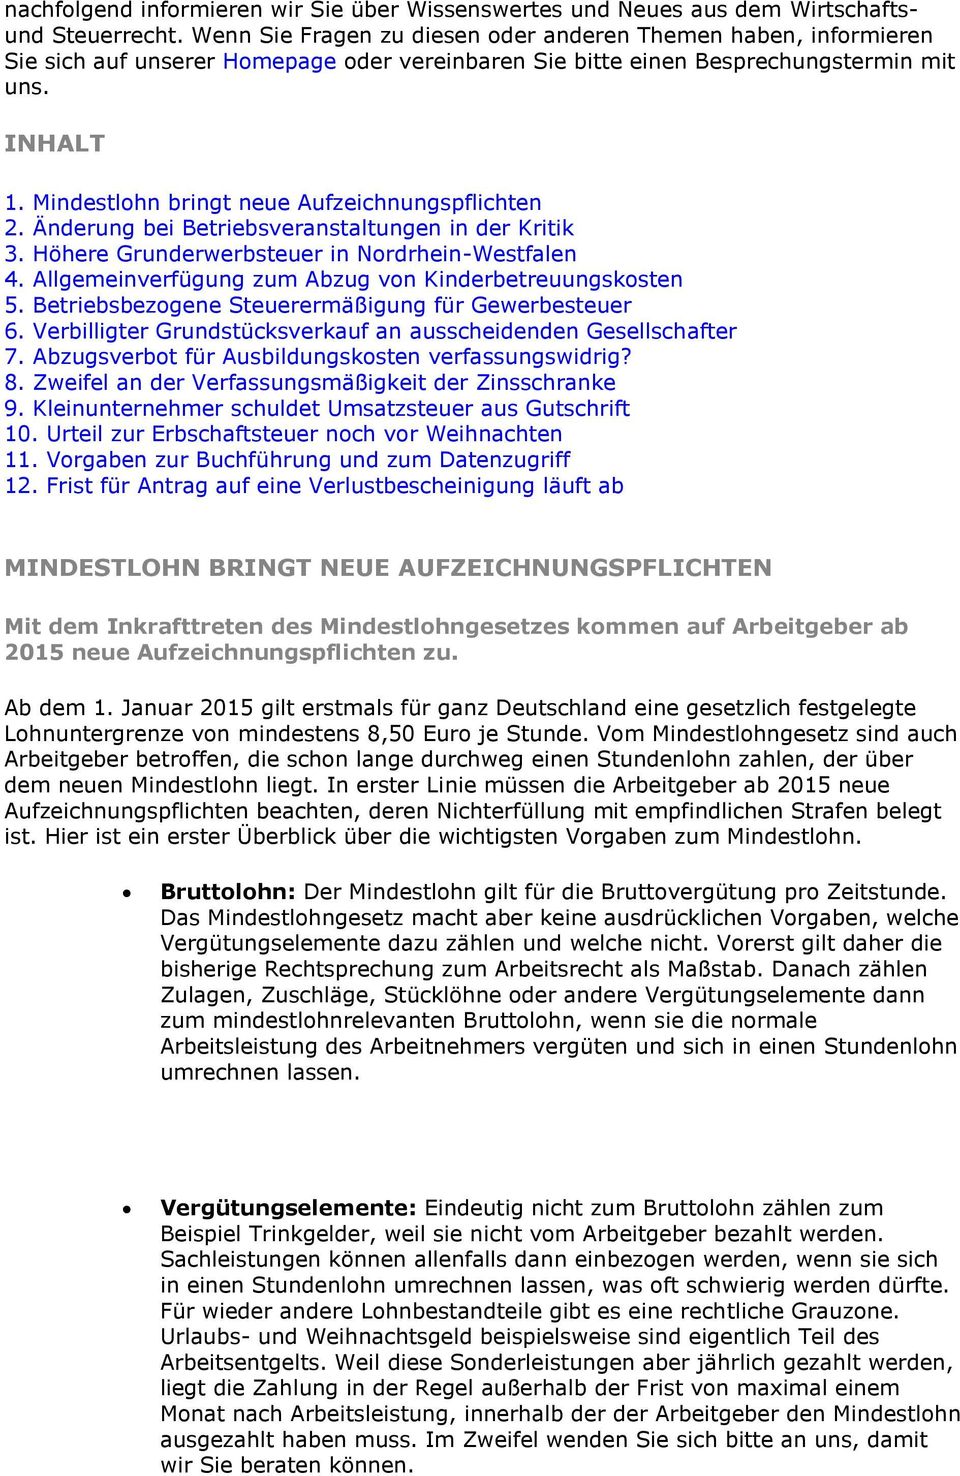 Mindestlohn bringt neue Aufzeichnungspflichten 2. Änderung bei Betriebsveranstaltungen in der Kritik 3. Höhere Grunderwerbsteuer in Nordrhein-Westfalen 4.